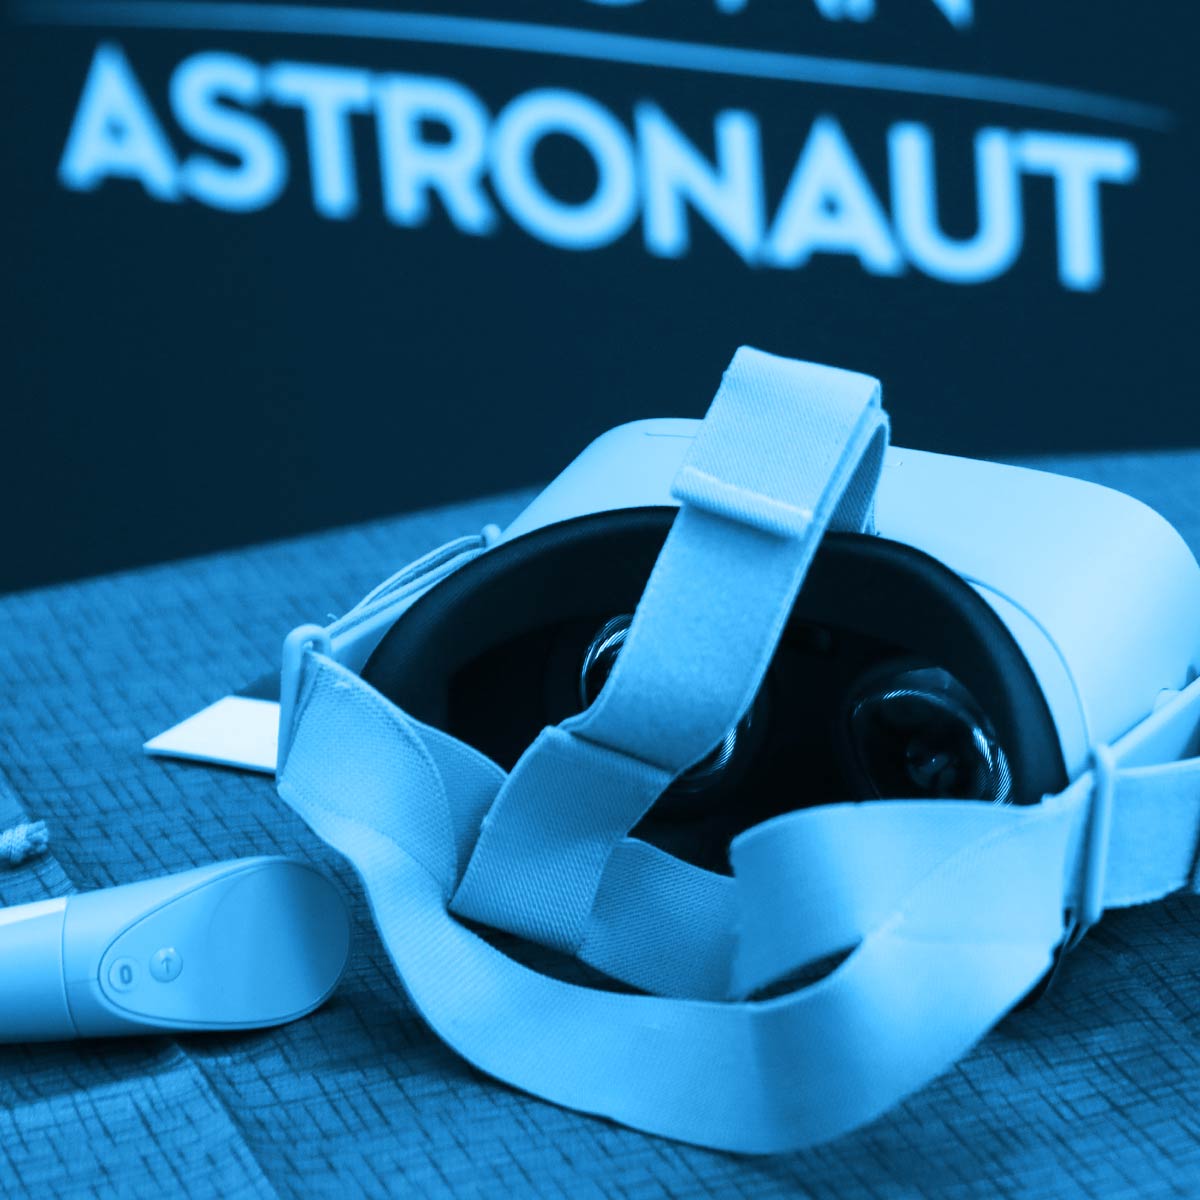 Being An Astronaut